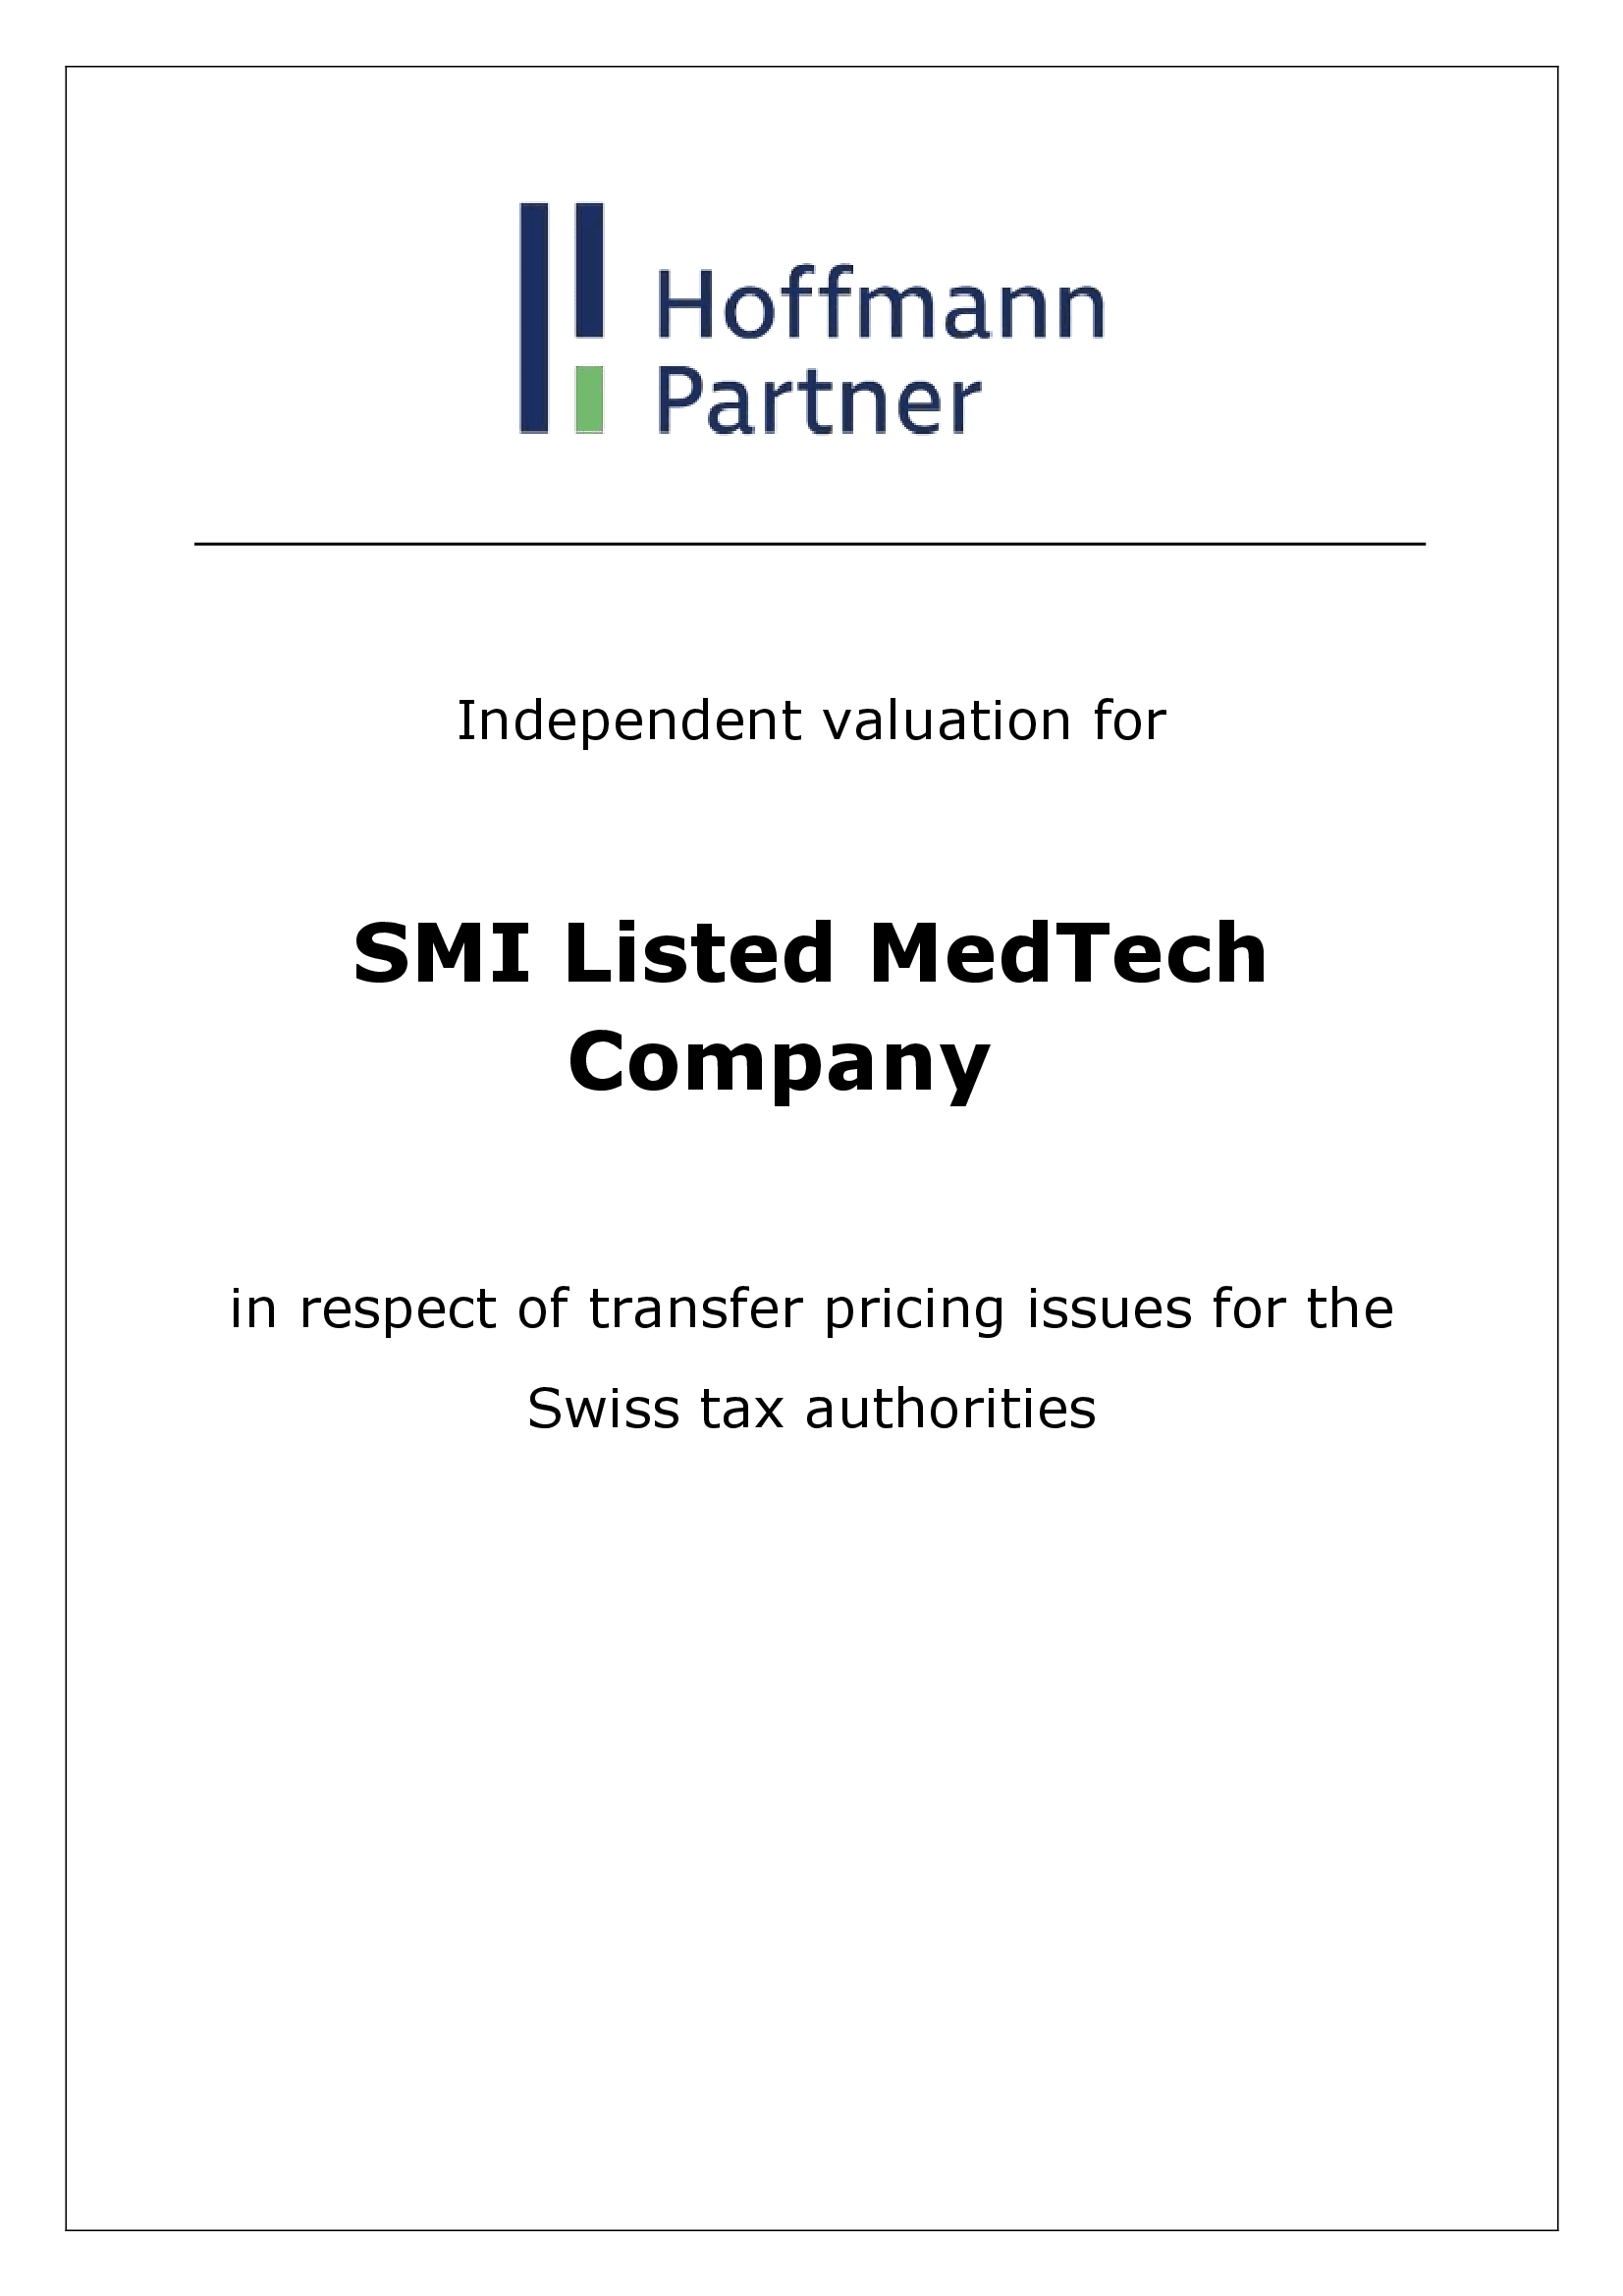 Medtech Company